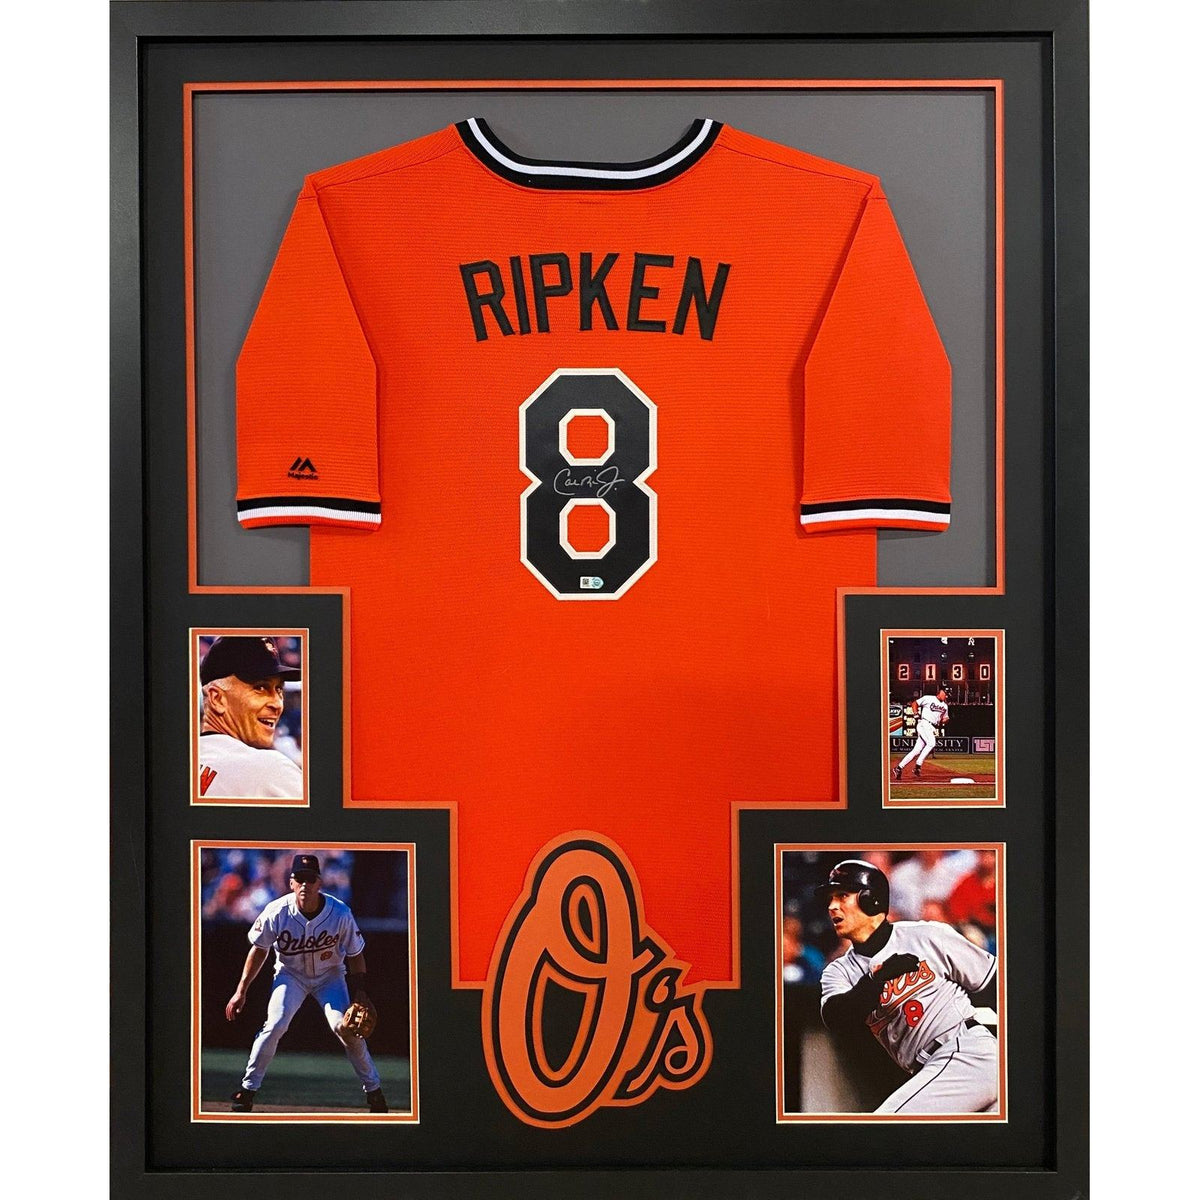 Cal Ripken Autographed and Framed Orange Orioles Jersey